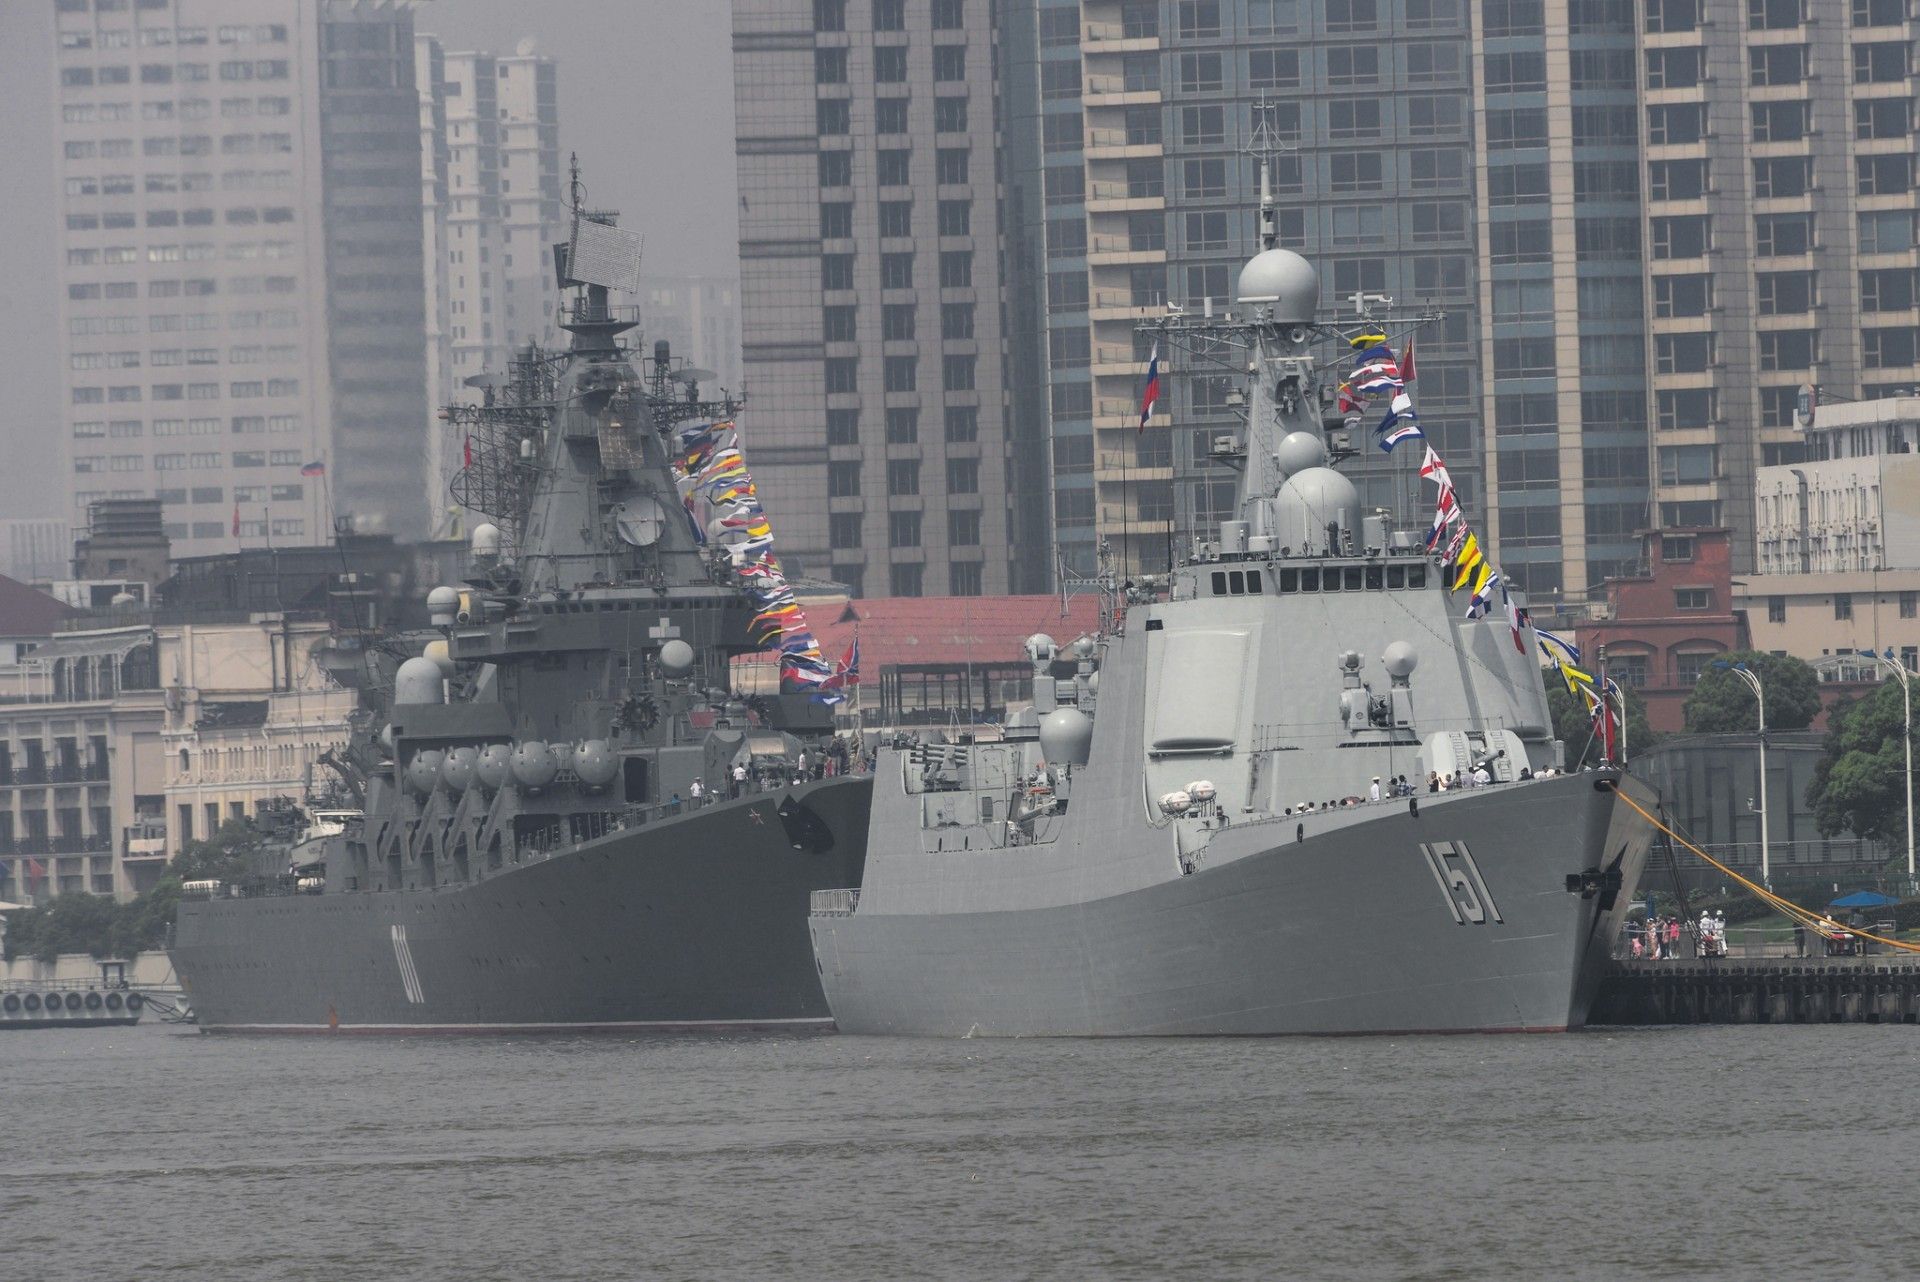 Chińsko-rosyjskie ćwiczenia "Maritime Cooperation 2014", realizowane w rejonie wybrzeży ChRL. Fot. emperornie/flickr/CC-BY-SA 2.0.